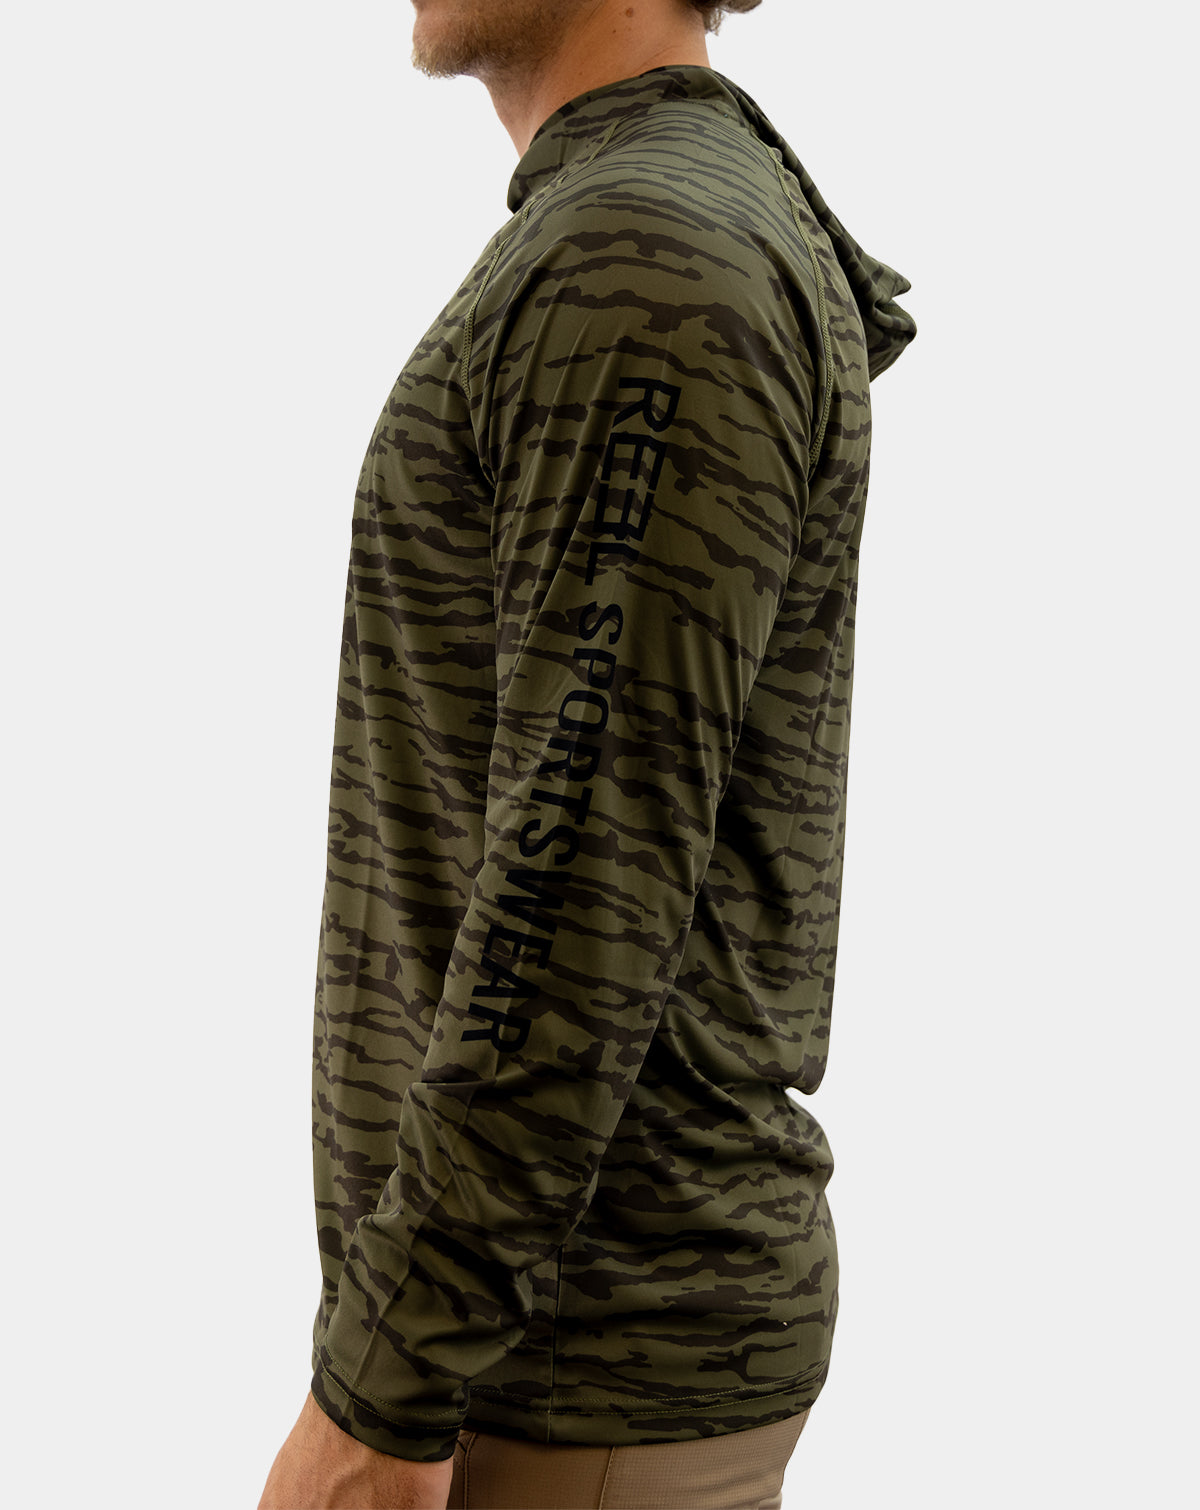 Preserve men&#39;s fishing Hoody long sleeve shirt, Reel Sportswear